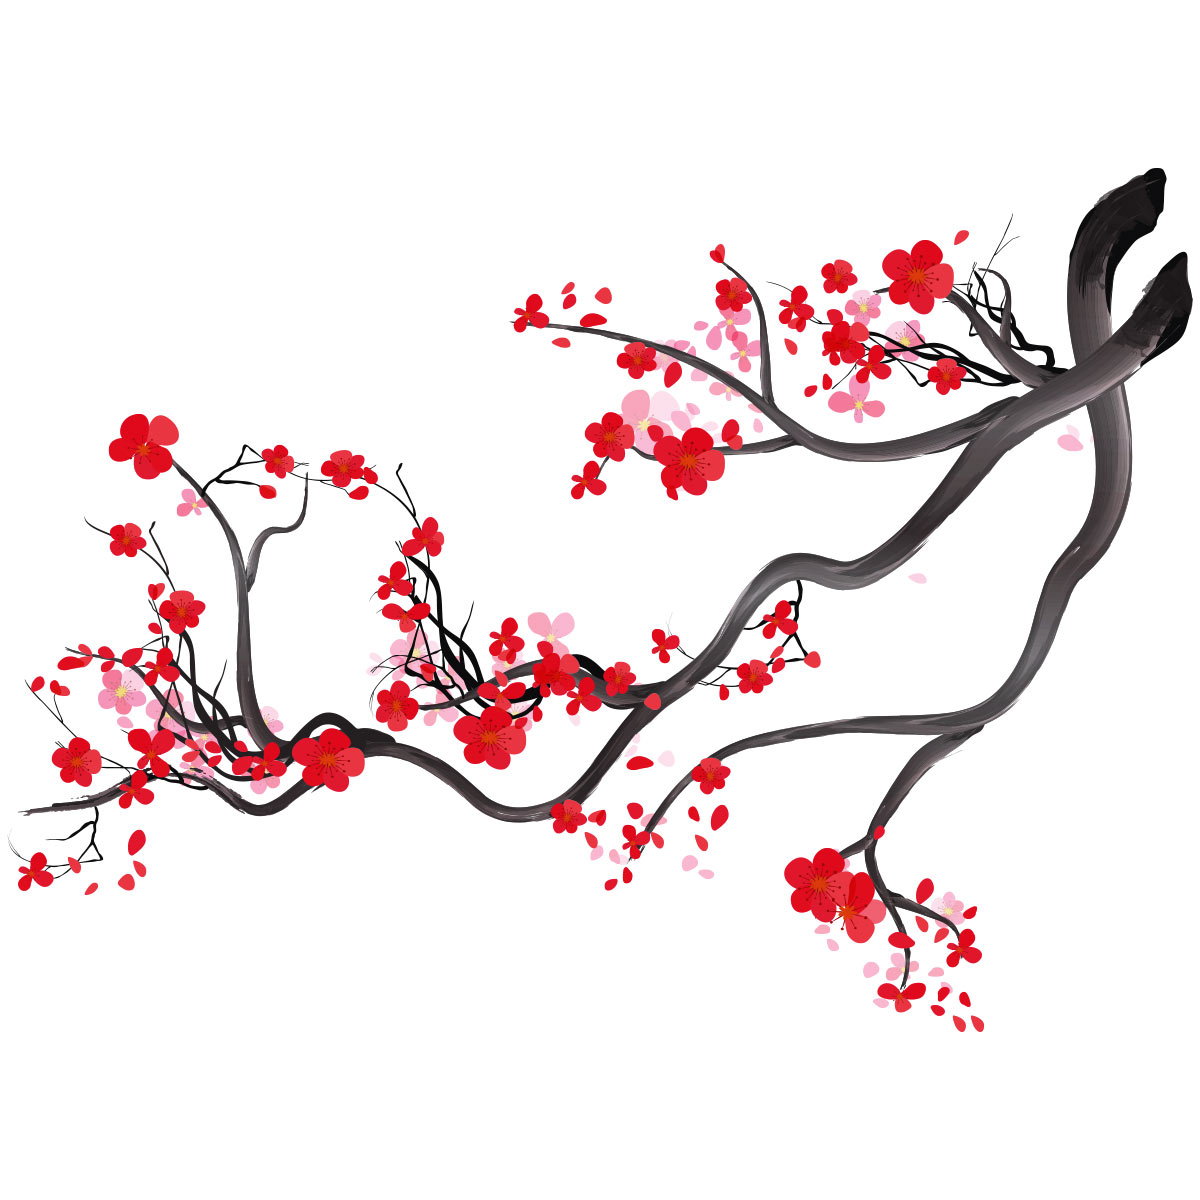 Branche de cerisier japonais - du japon et des fleurs